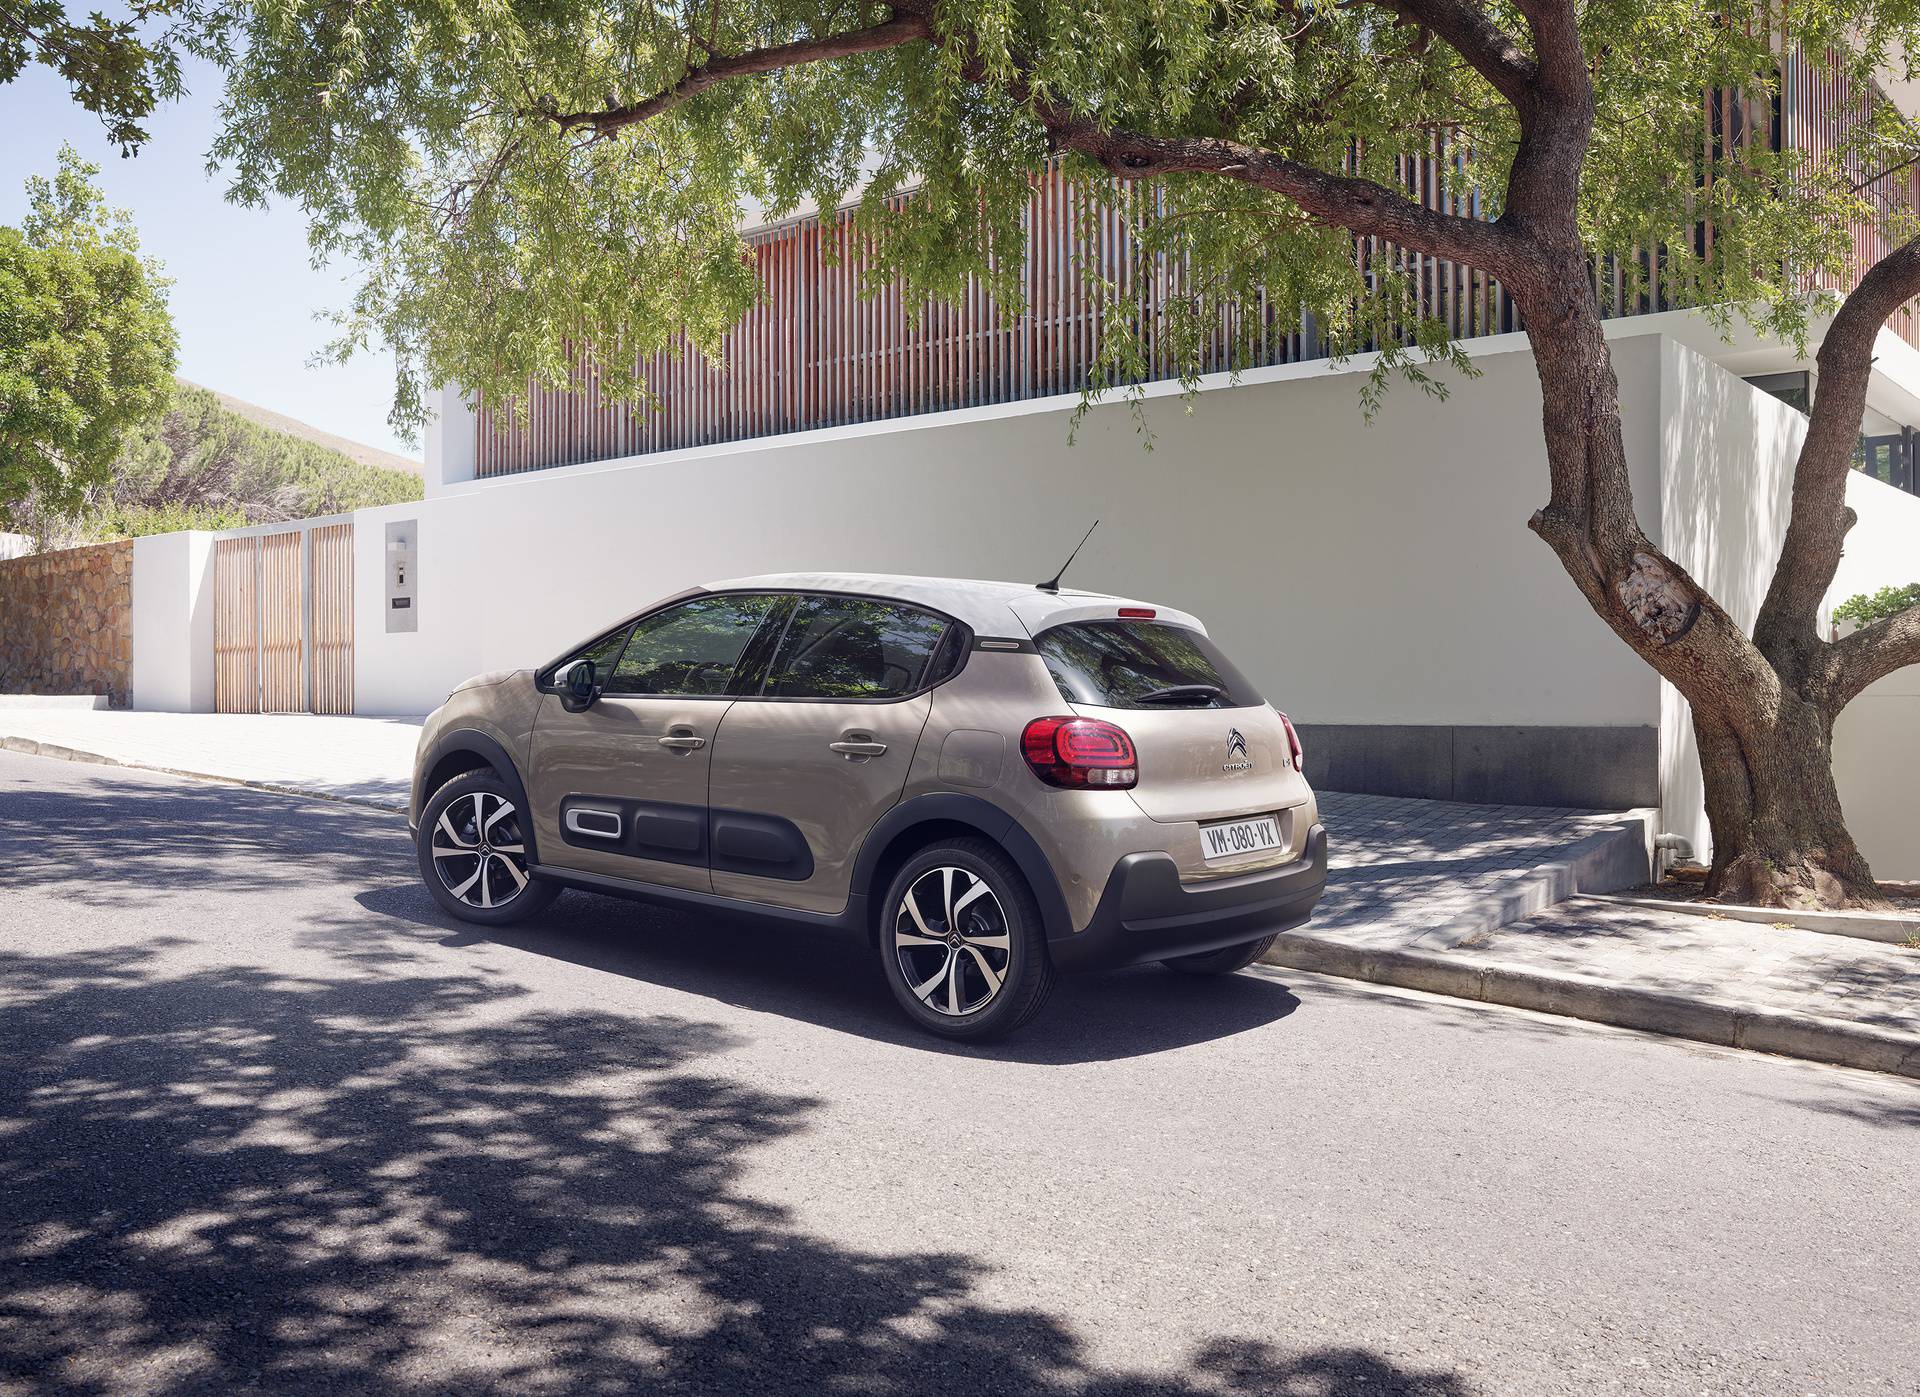 Stigao redizajnirani Citroën C3 s novim izgledom i opremom